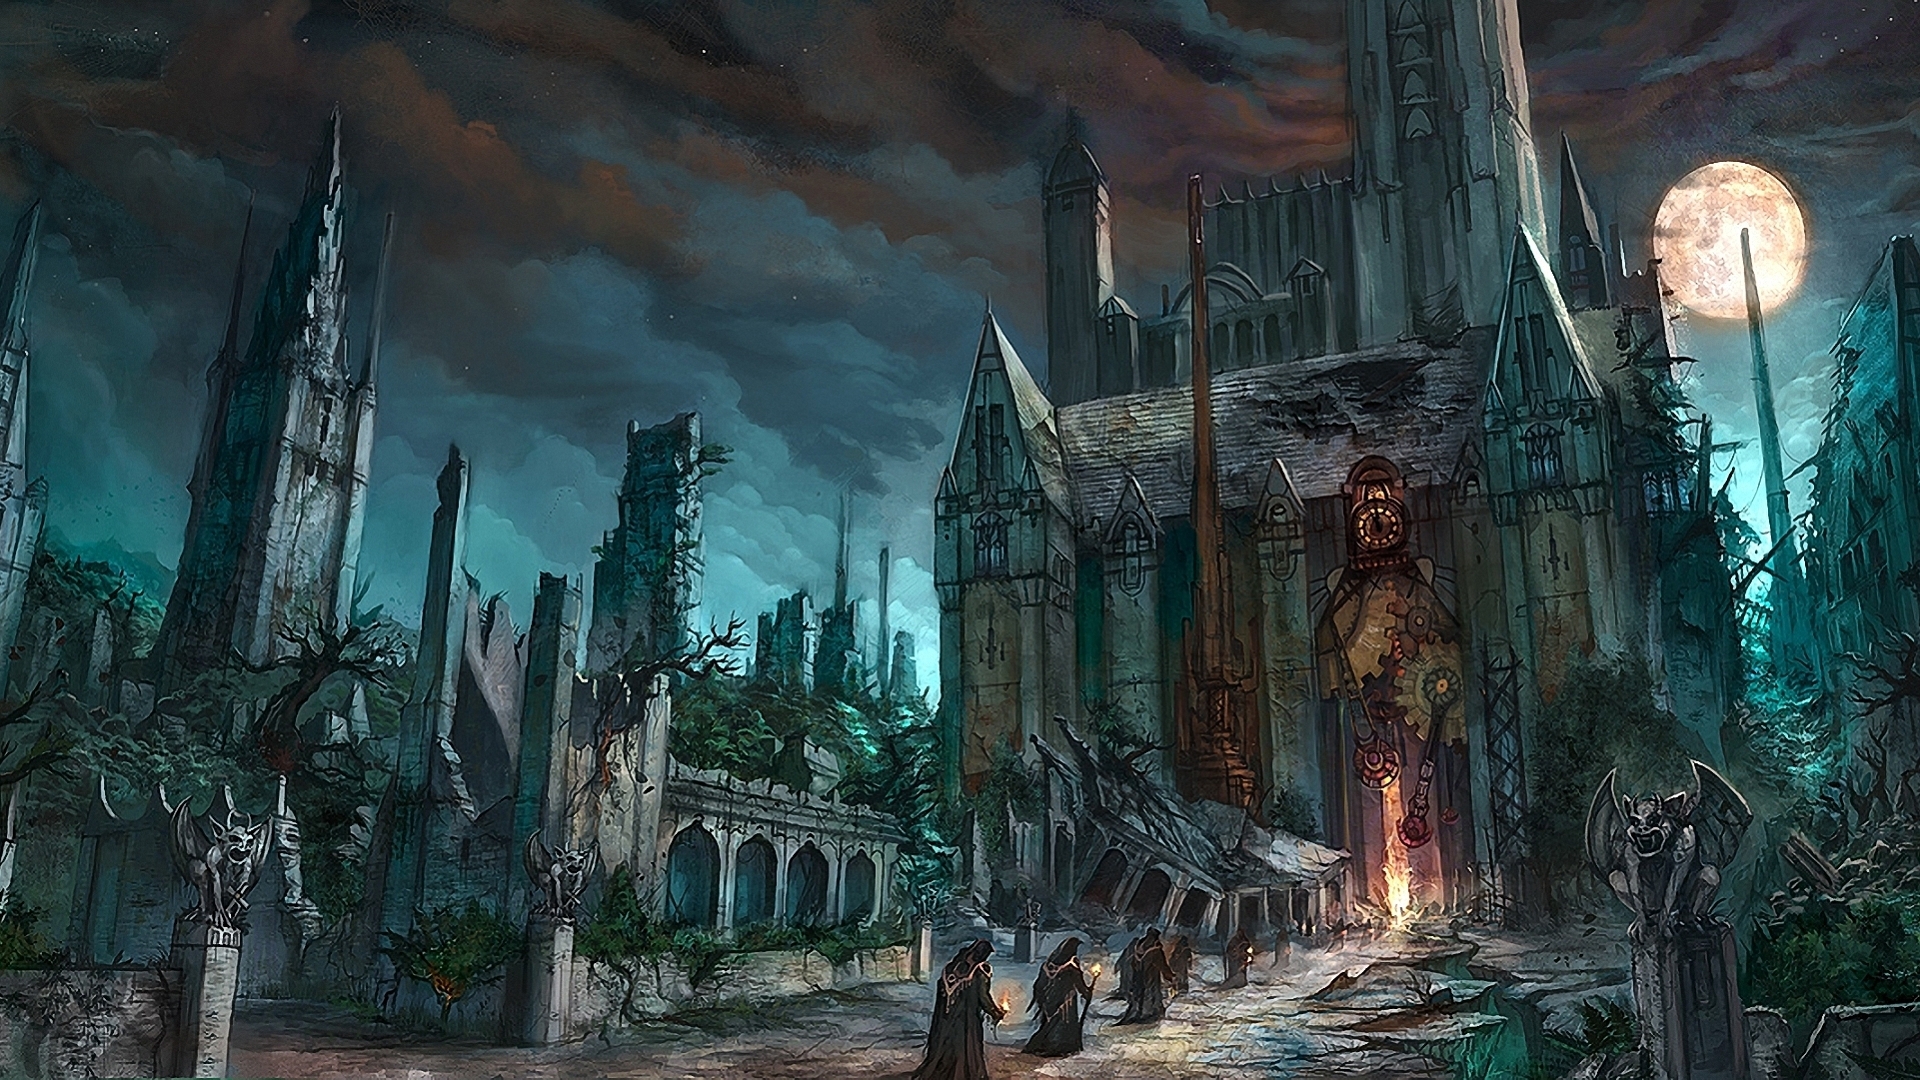 Scary Dark Castle Fantasy | Wallpaper Tycoon #5495 Wallpaper